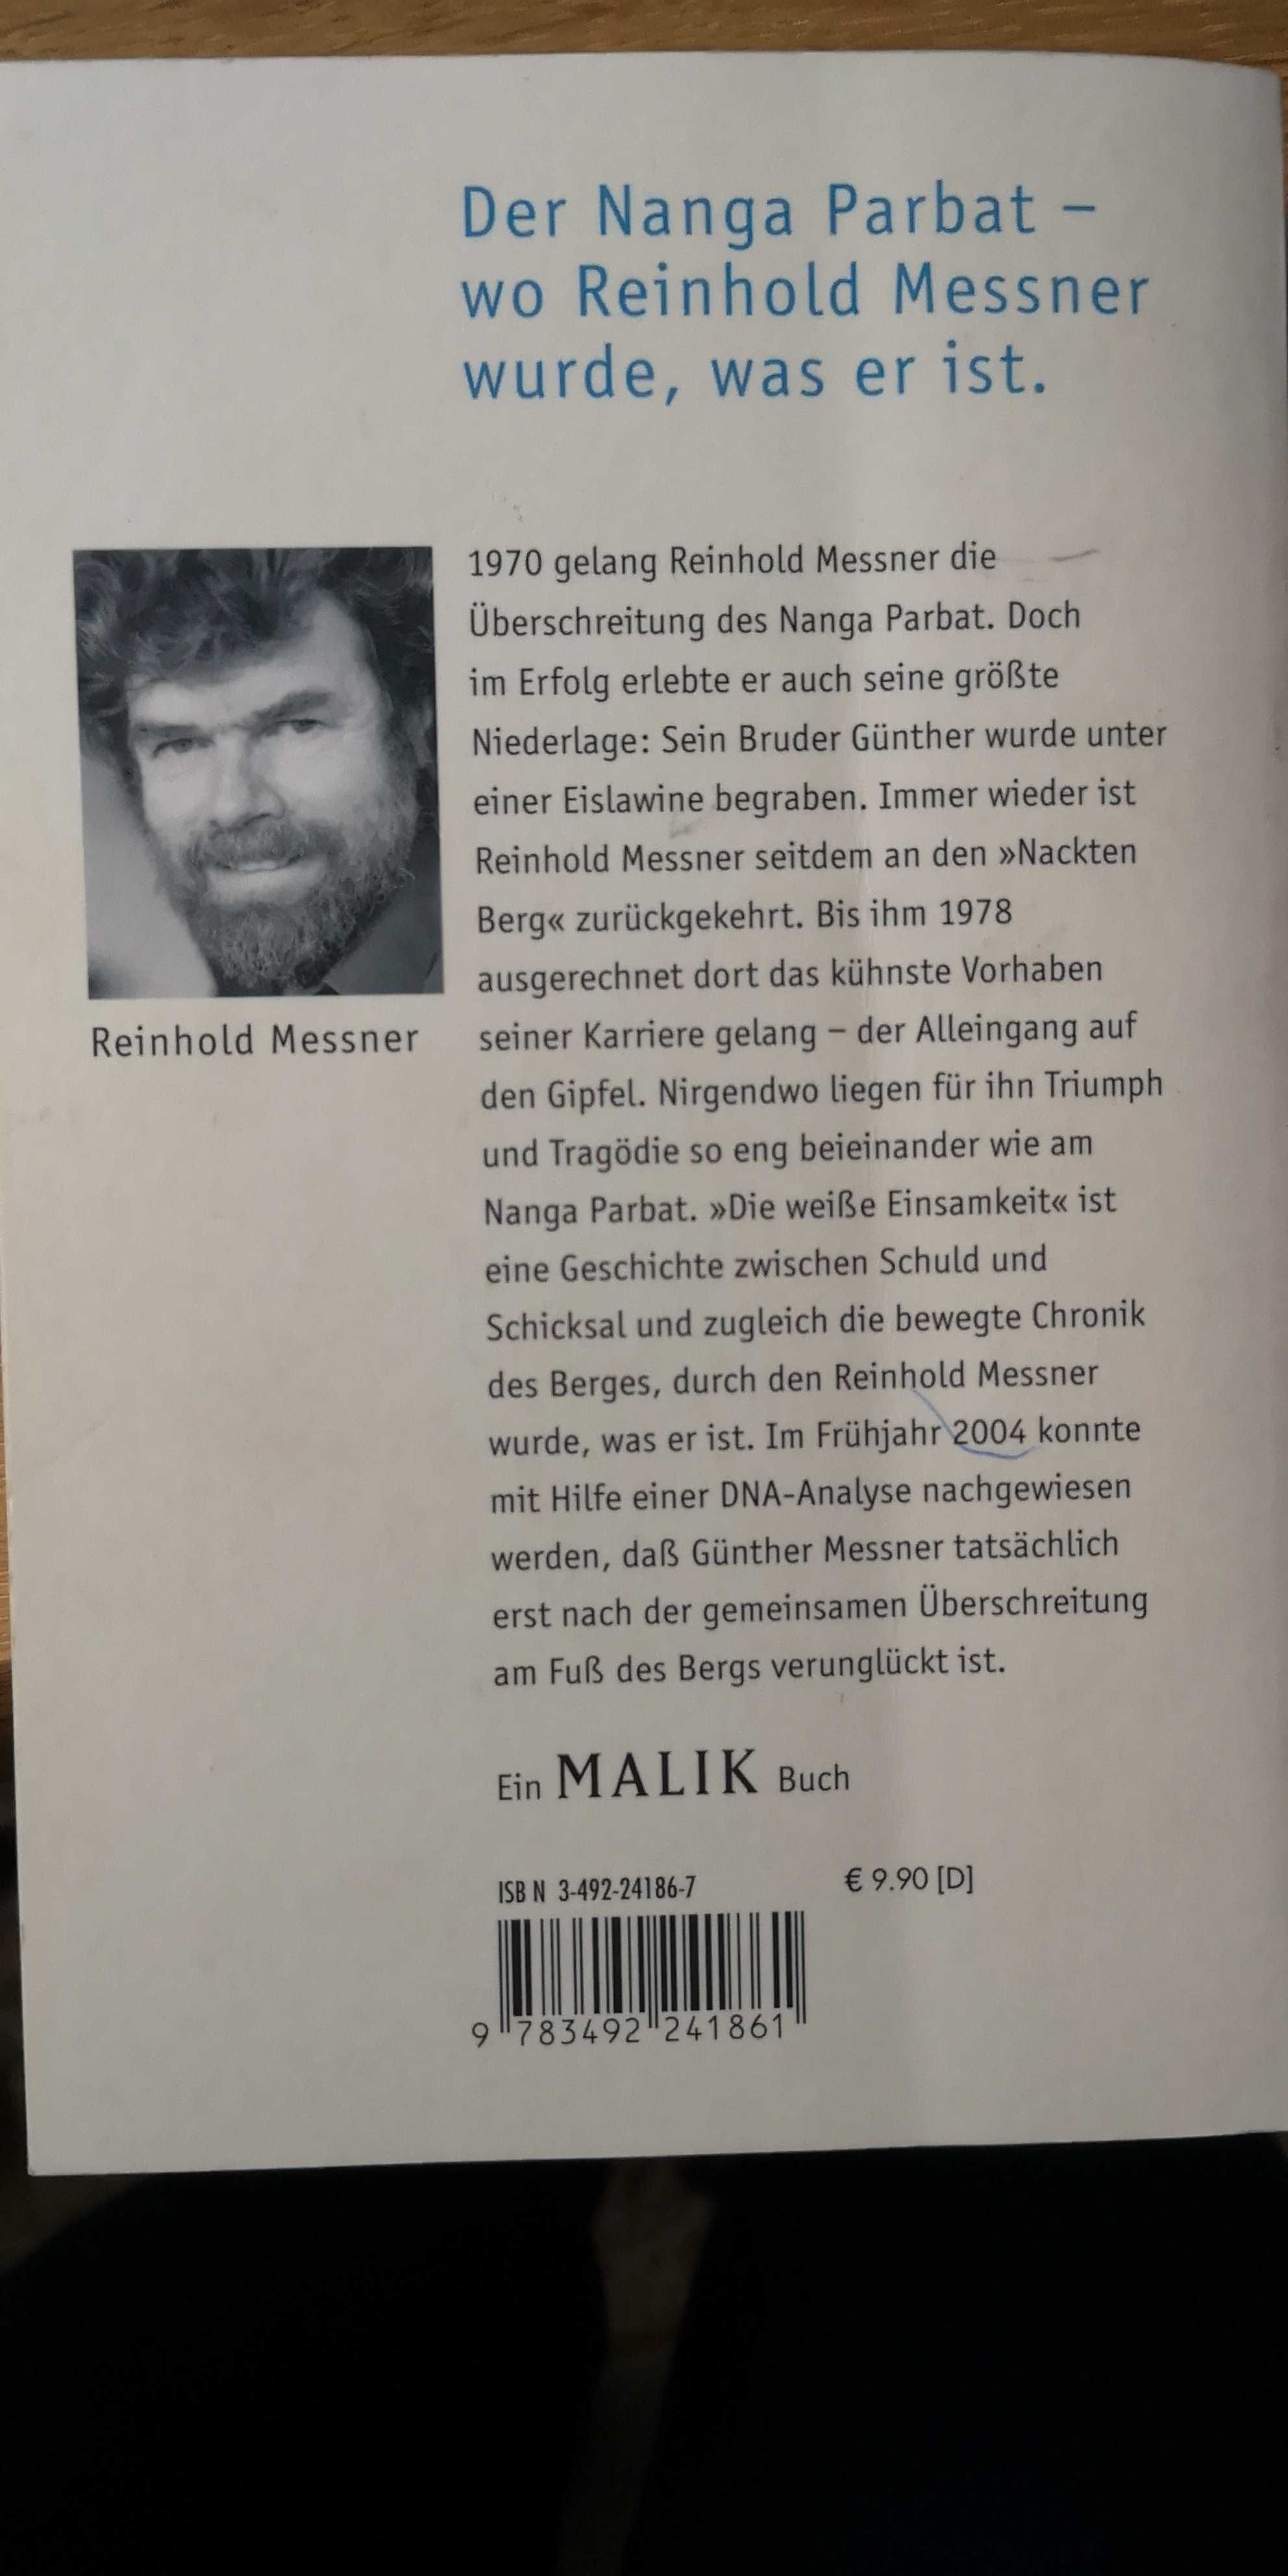 "Die weisse Einsamkeit" Reinhold Messner